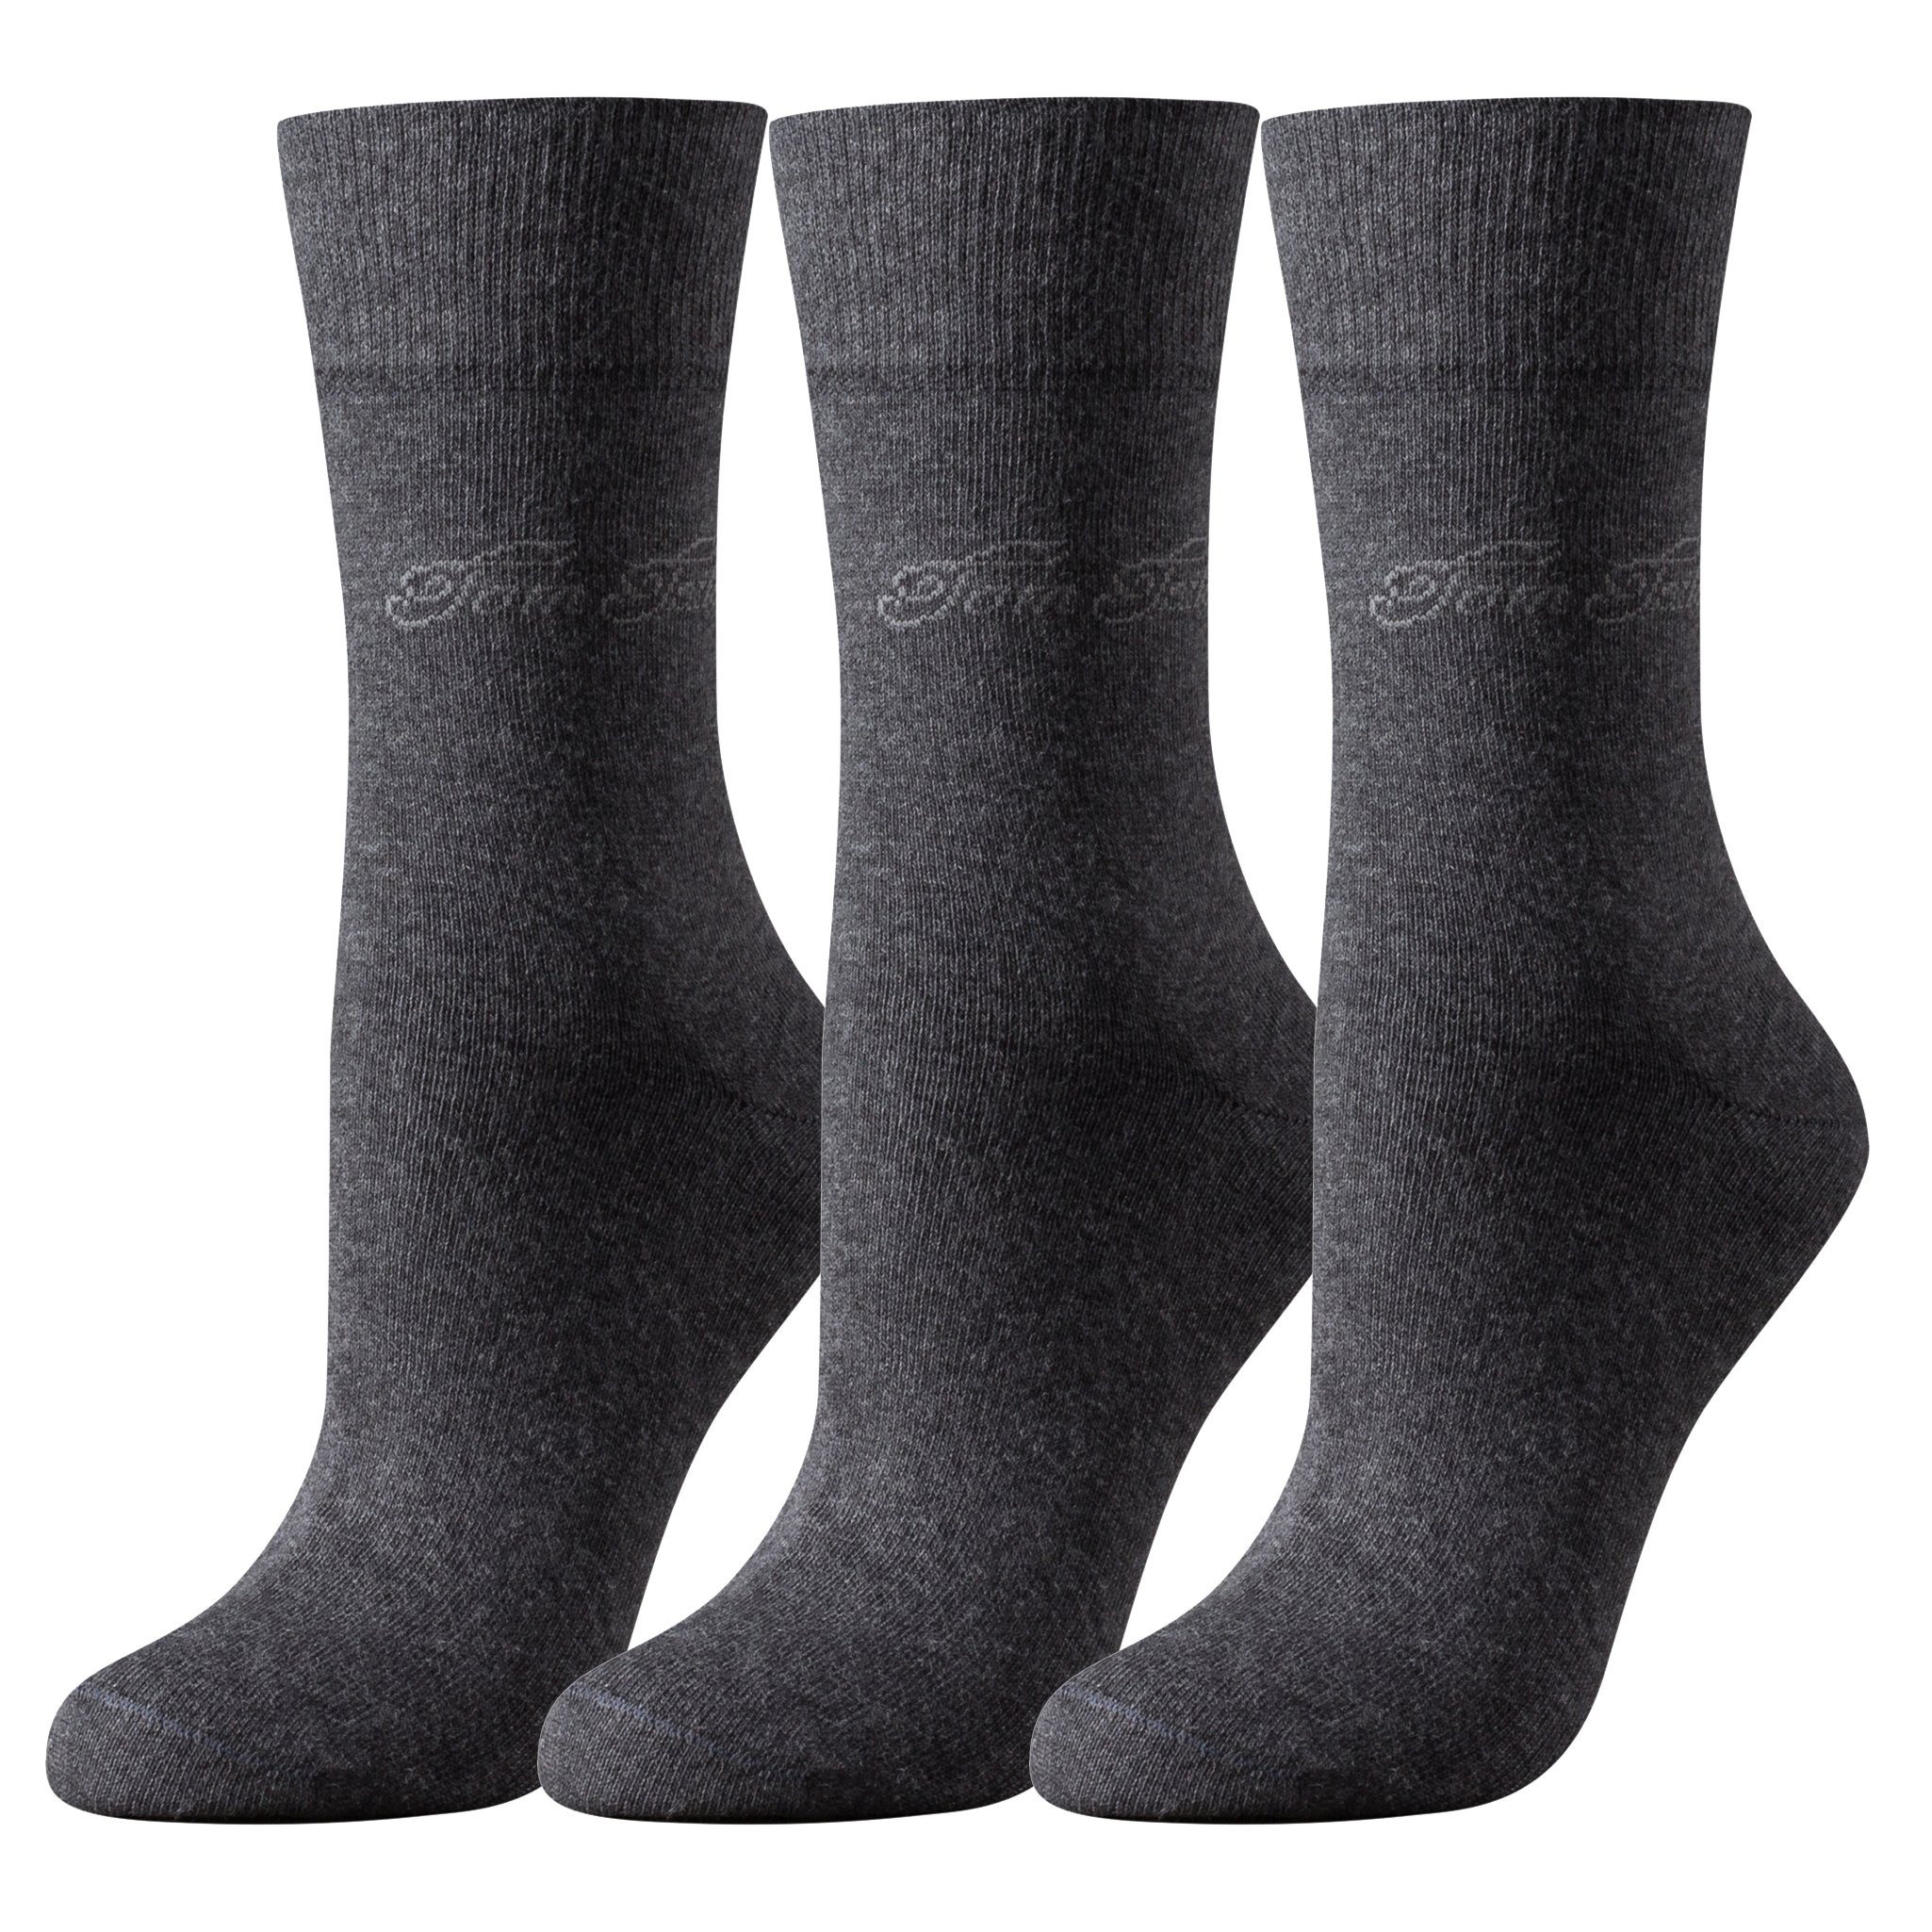 TOM TAILOR Socken 9703620042 Tom Tailor 3er Pack Basic Women Socks 9703 620 anthracite Doppelpack Strümpfe Socken